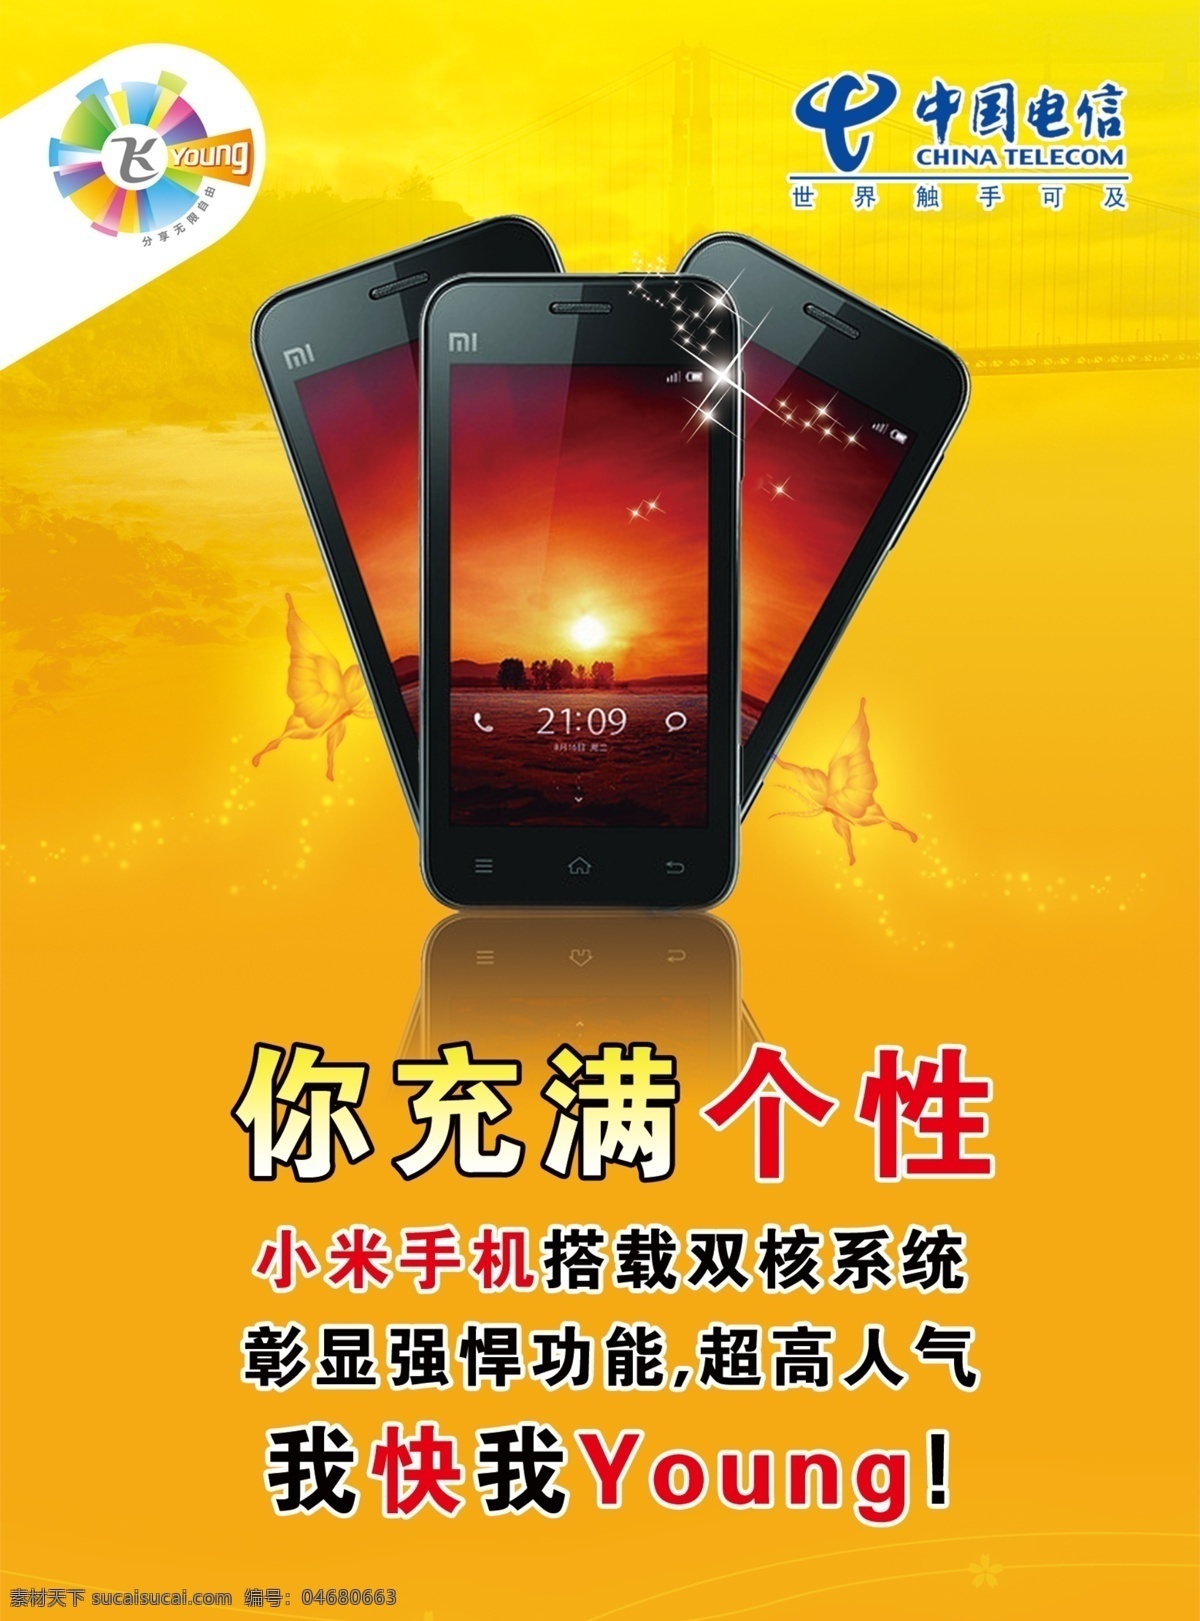 标志 个性 广告设计模板 黑色手机 小米手机 源文件 中国电信 young 桔色 桔红 海报 其他海报设计